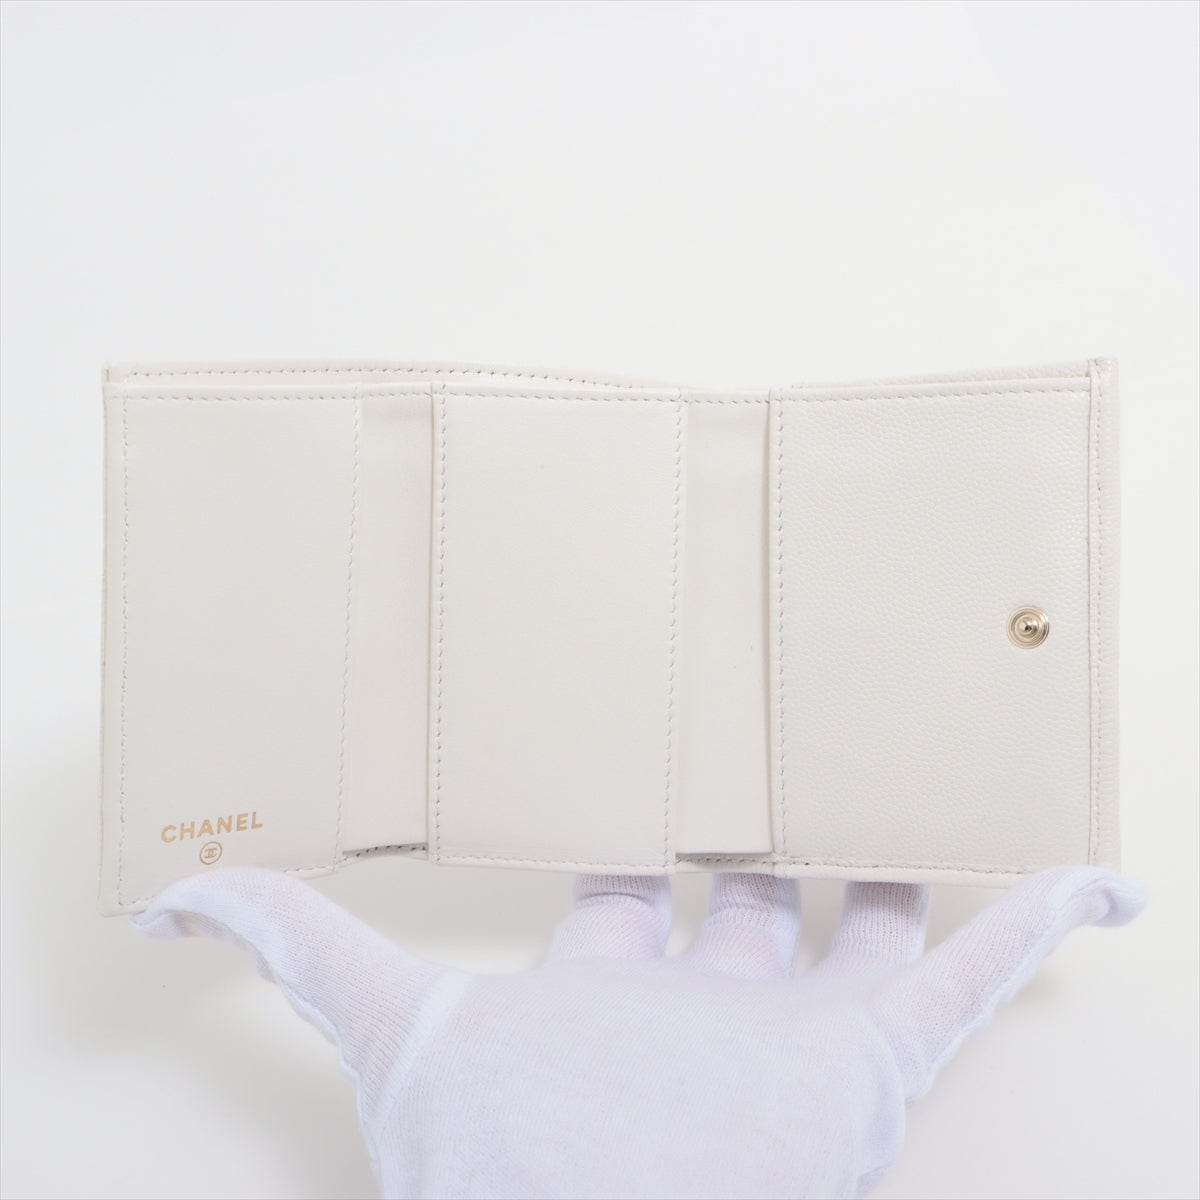 Chanel Matelasse Caviarskin Compact Wallet White Gold Metal fittings KGU9H7AK